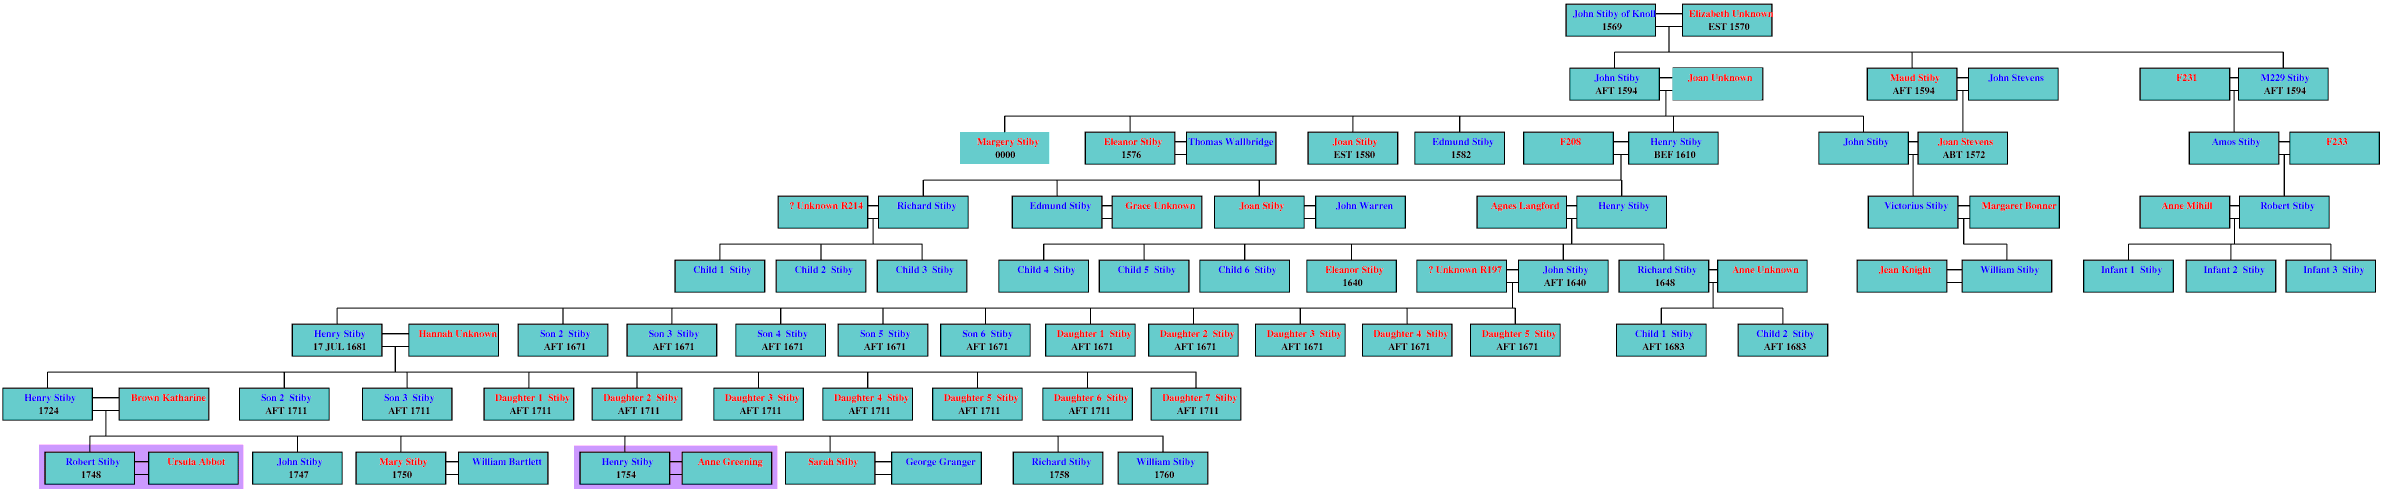 Family Tree A